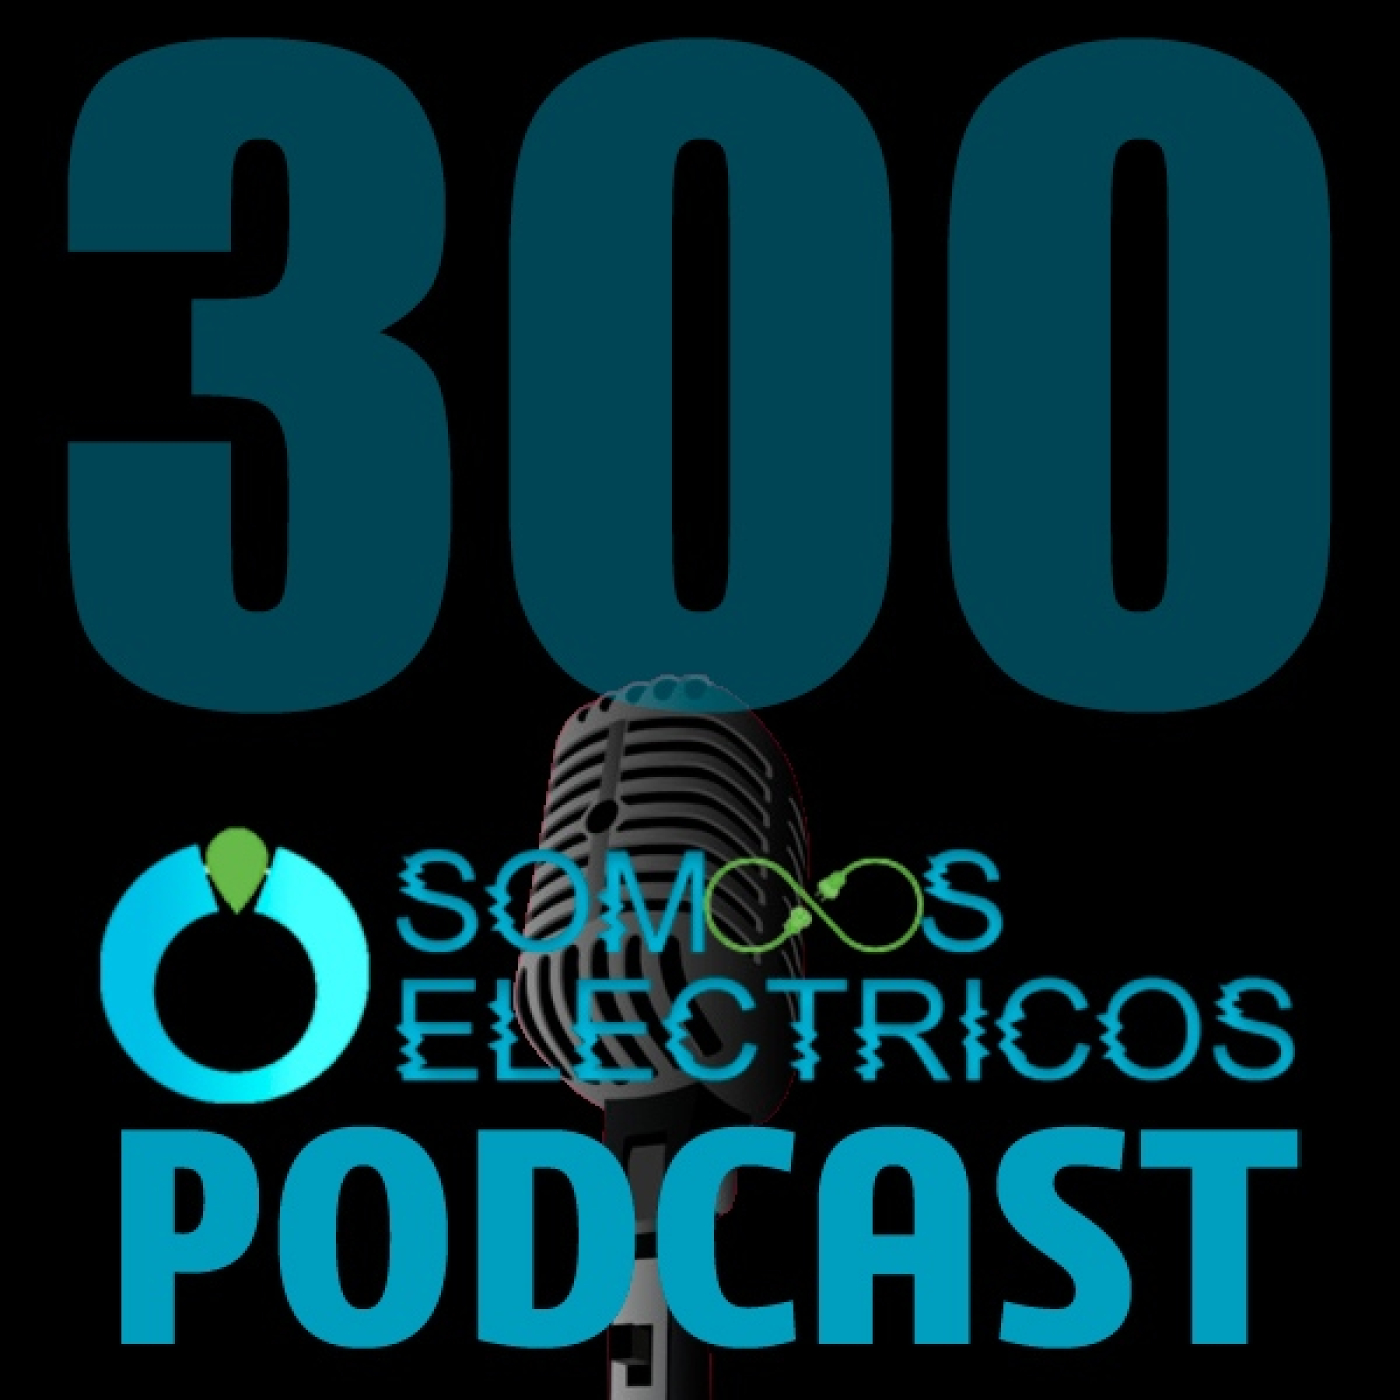 El OMODA 5 Eléctrico llega a ESPAÑA y más | EP300